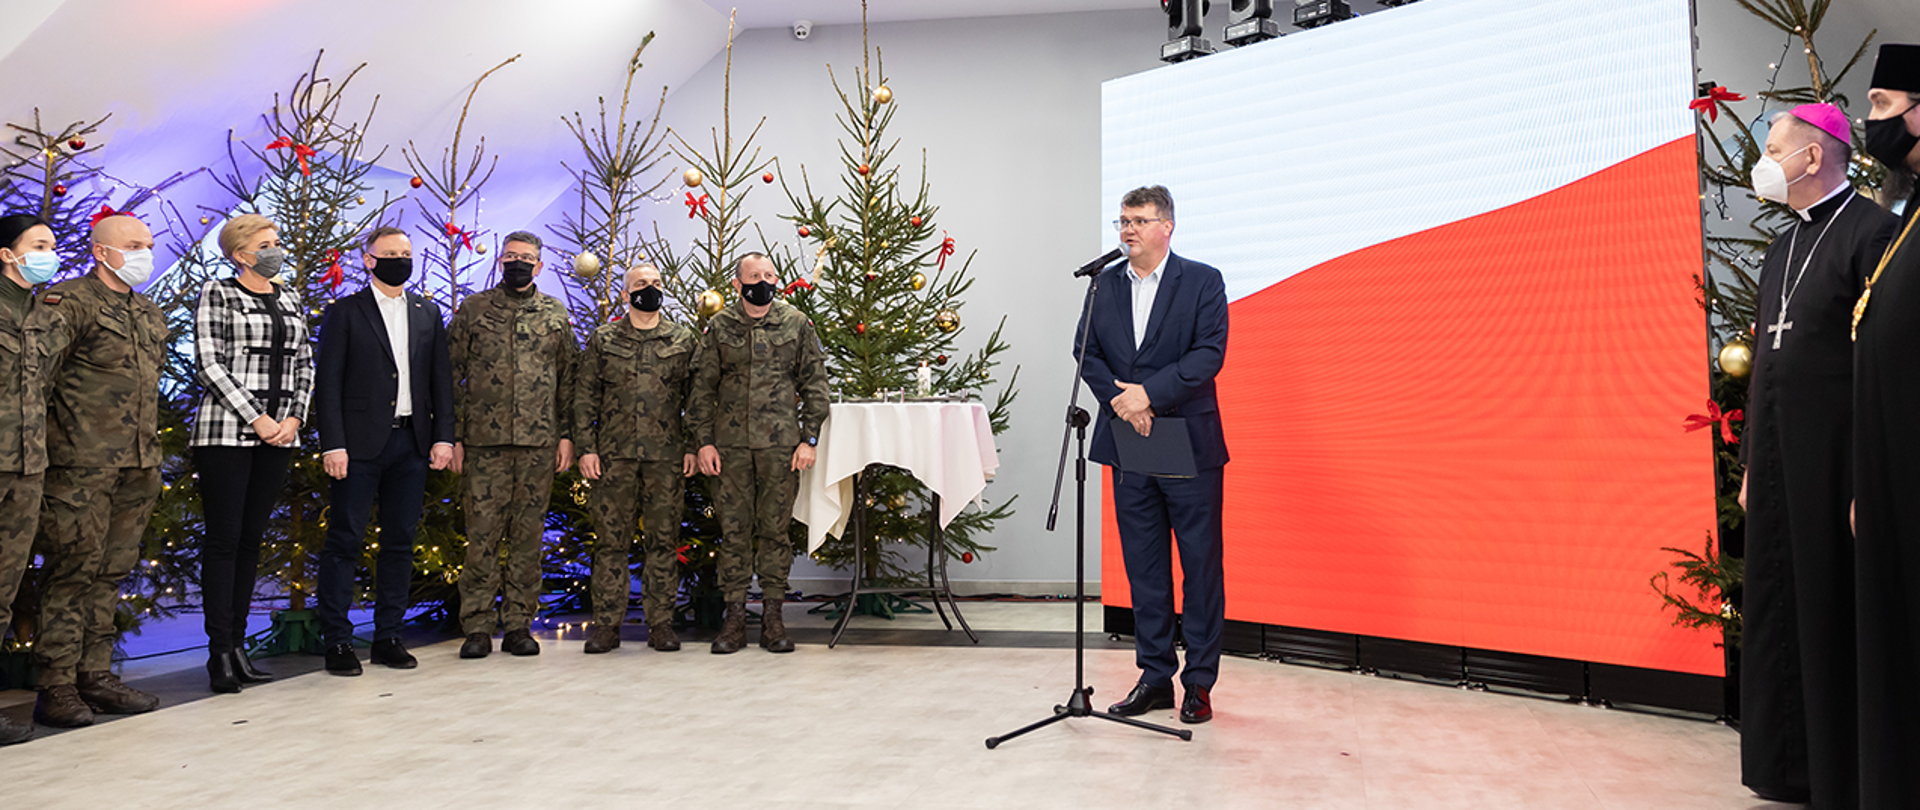 Na zdjęciu widać przemawiającego wiceministra Macieja Wąsika. Widać również m.in. Parę Prezydencką. 